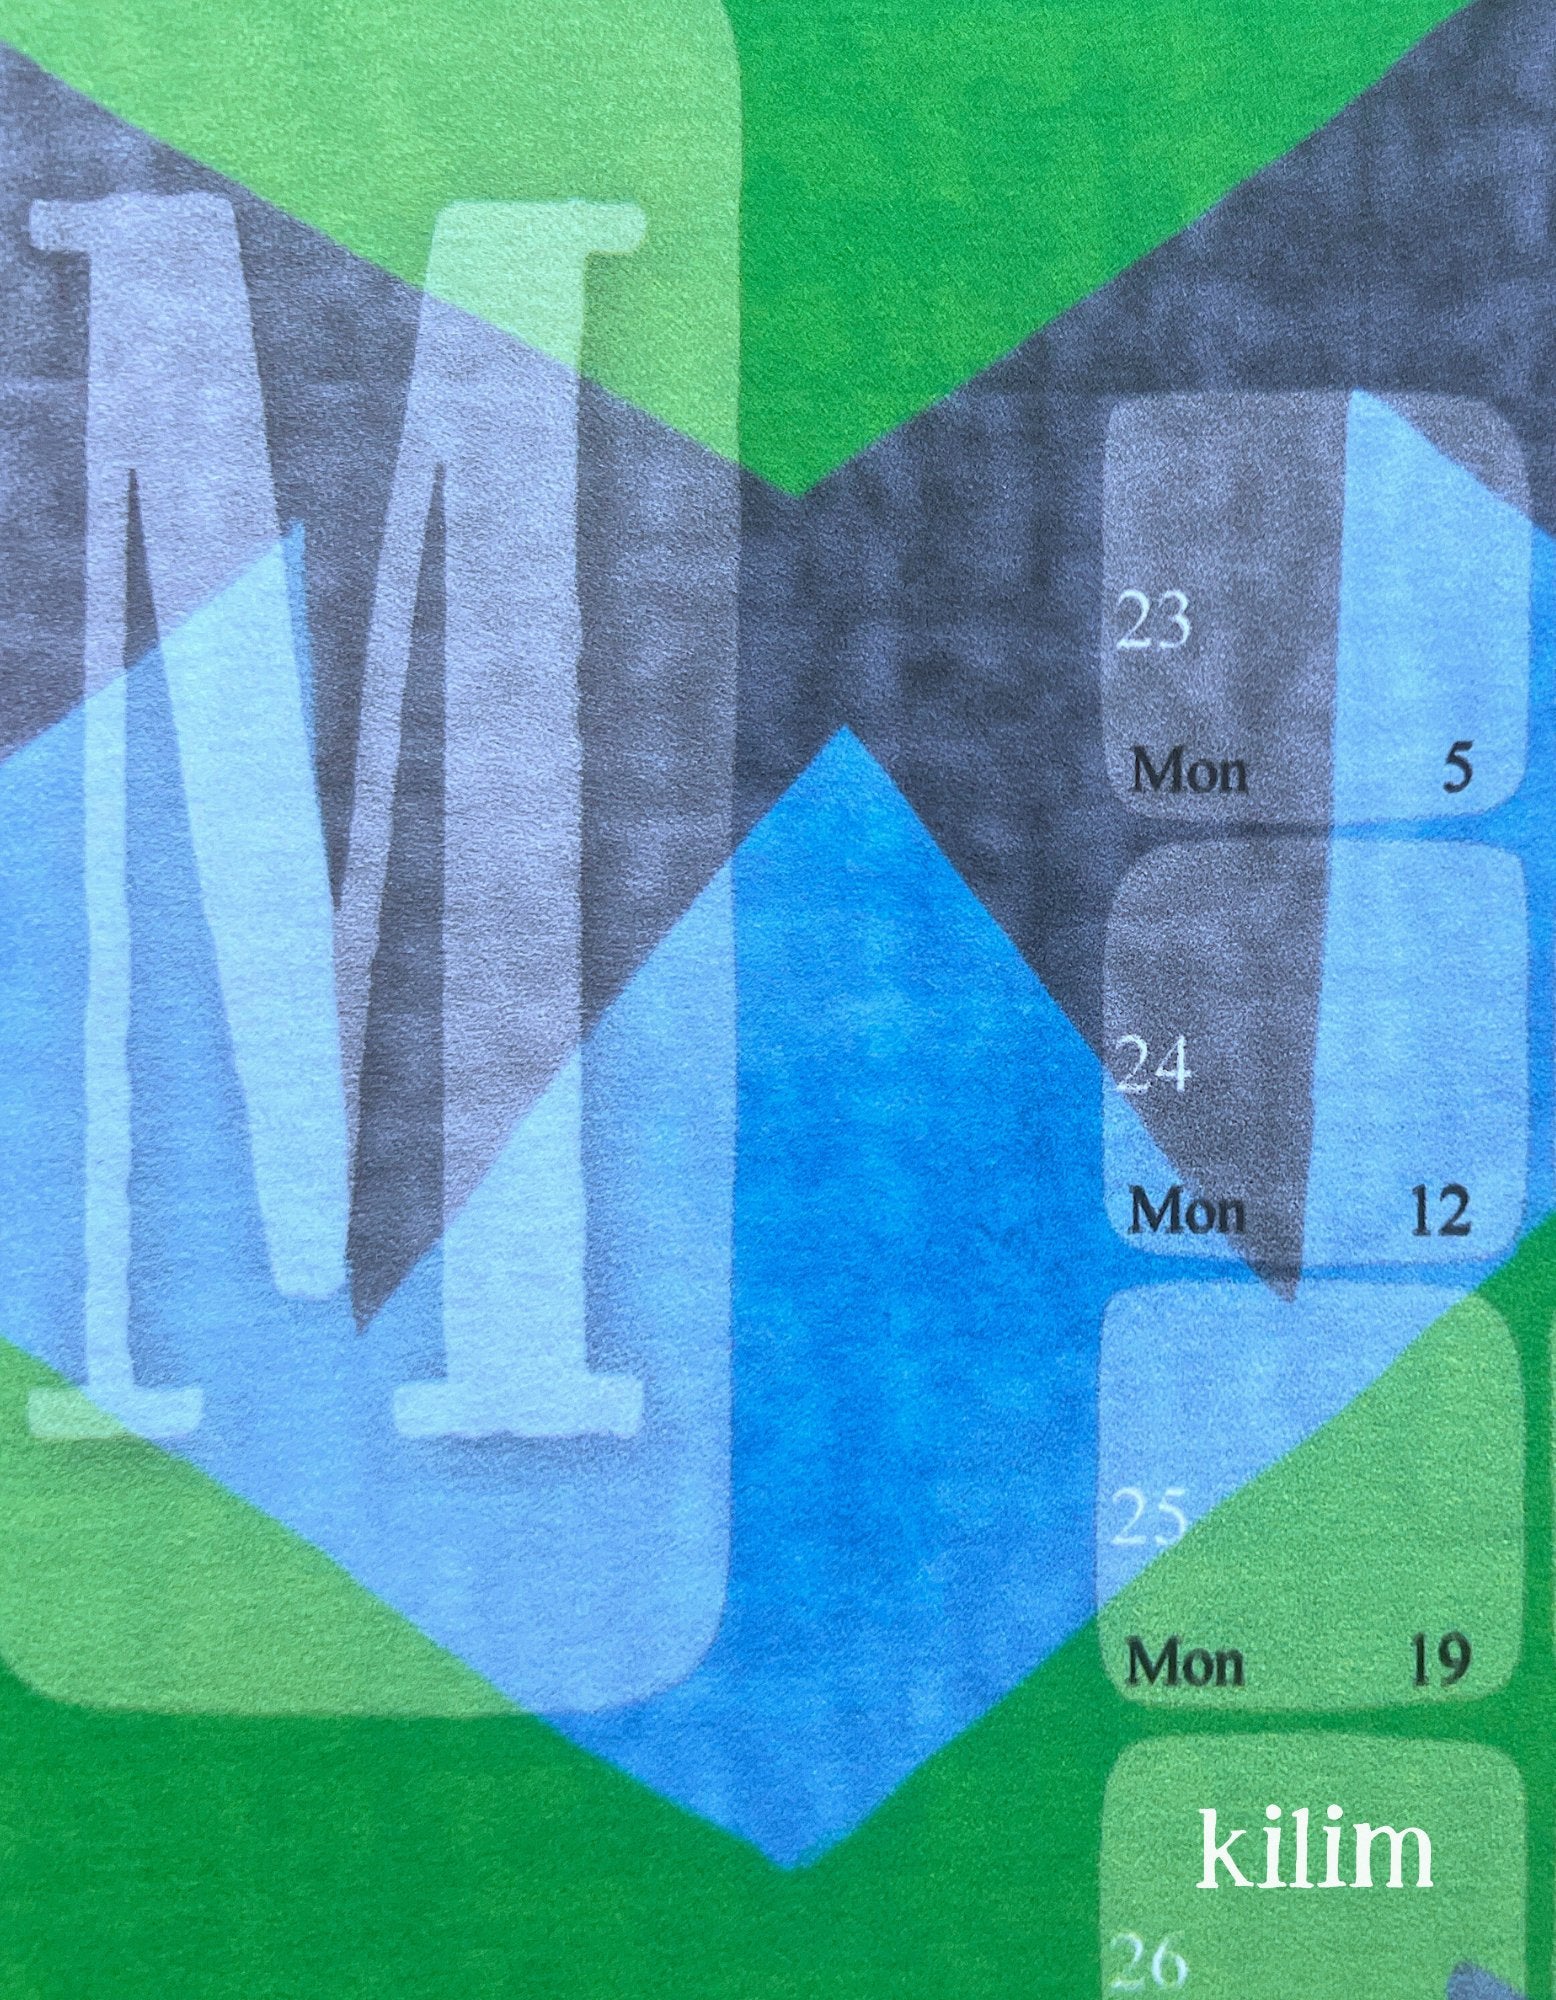 Wandkalender // Kilim Classic grün - Kilim